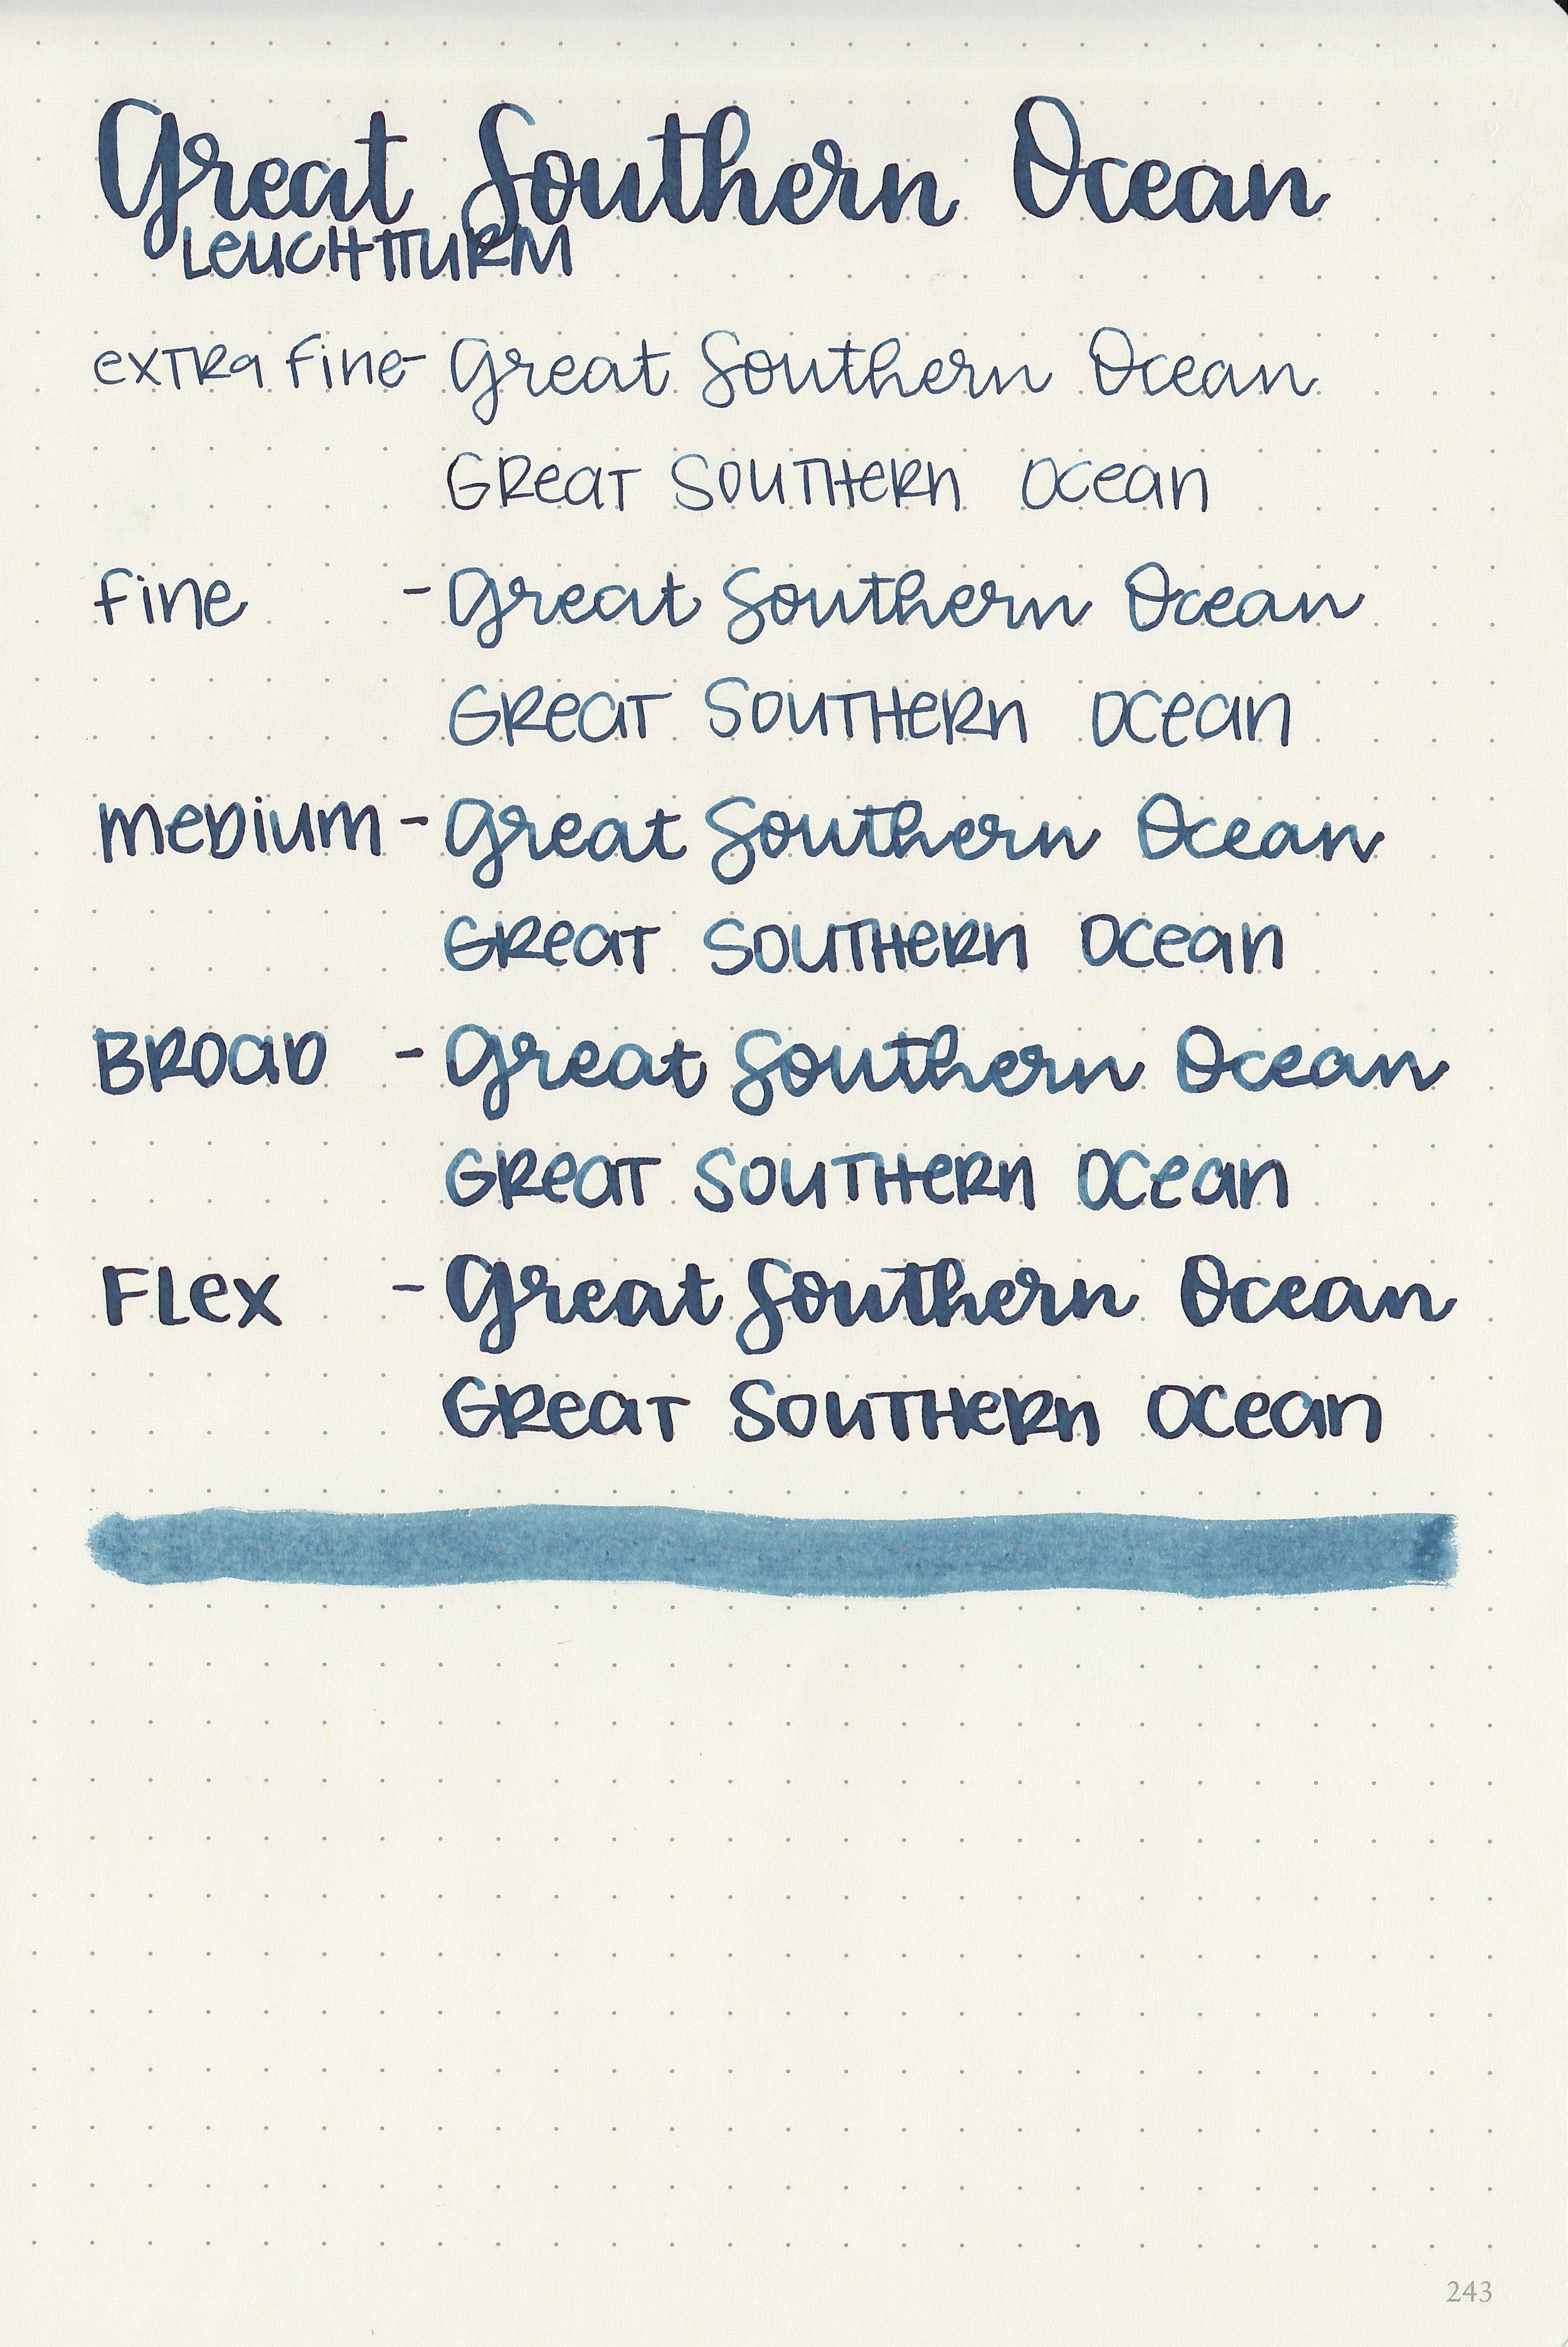 ro-great-southern-ocean-9.jpg